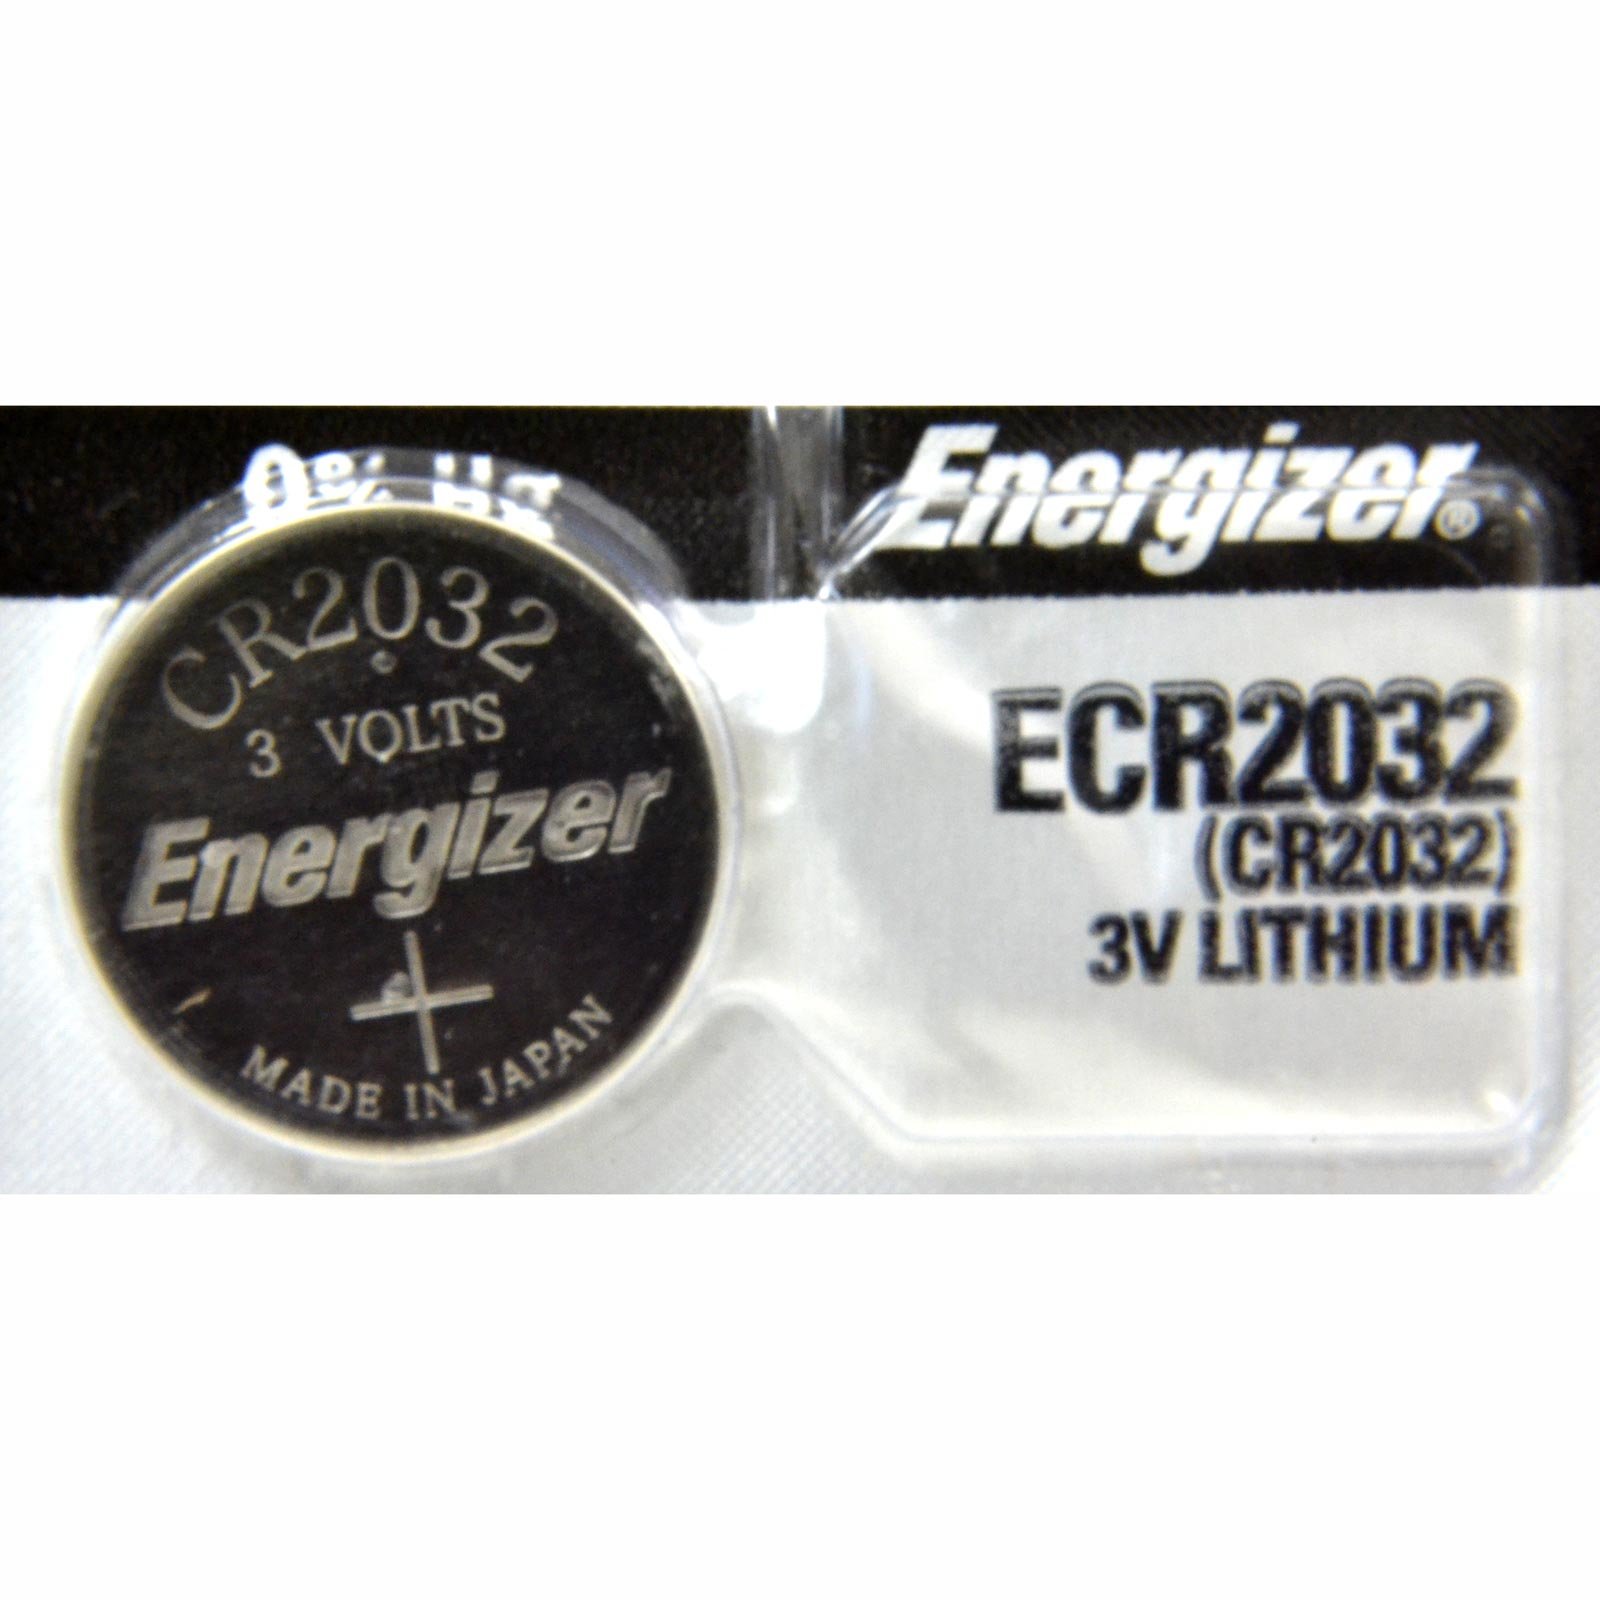 Pila de litio Energizer 2032 de 3.0v     Batería de litio tipo botón con voltaje de 3.0 volts capacidad de 235 mah composición de litio-manganesio y dióxido peso aproximado de 2.6 gramos y volumen de 0.8 centímetros cúbicos colores de la pila plateado                                              .                                        - ENERGIZER